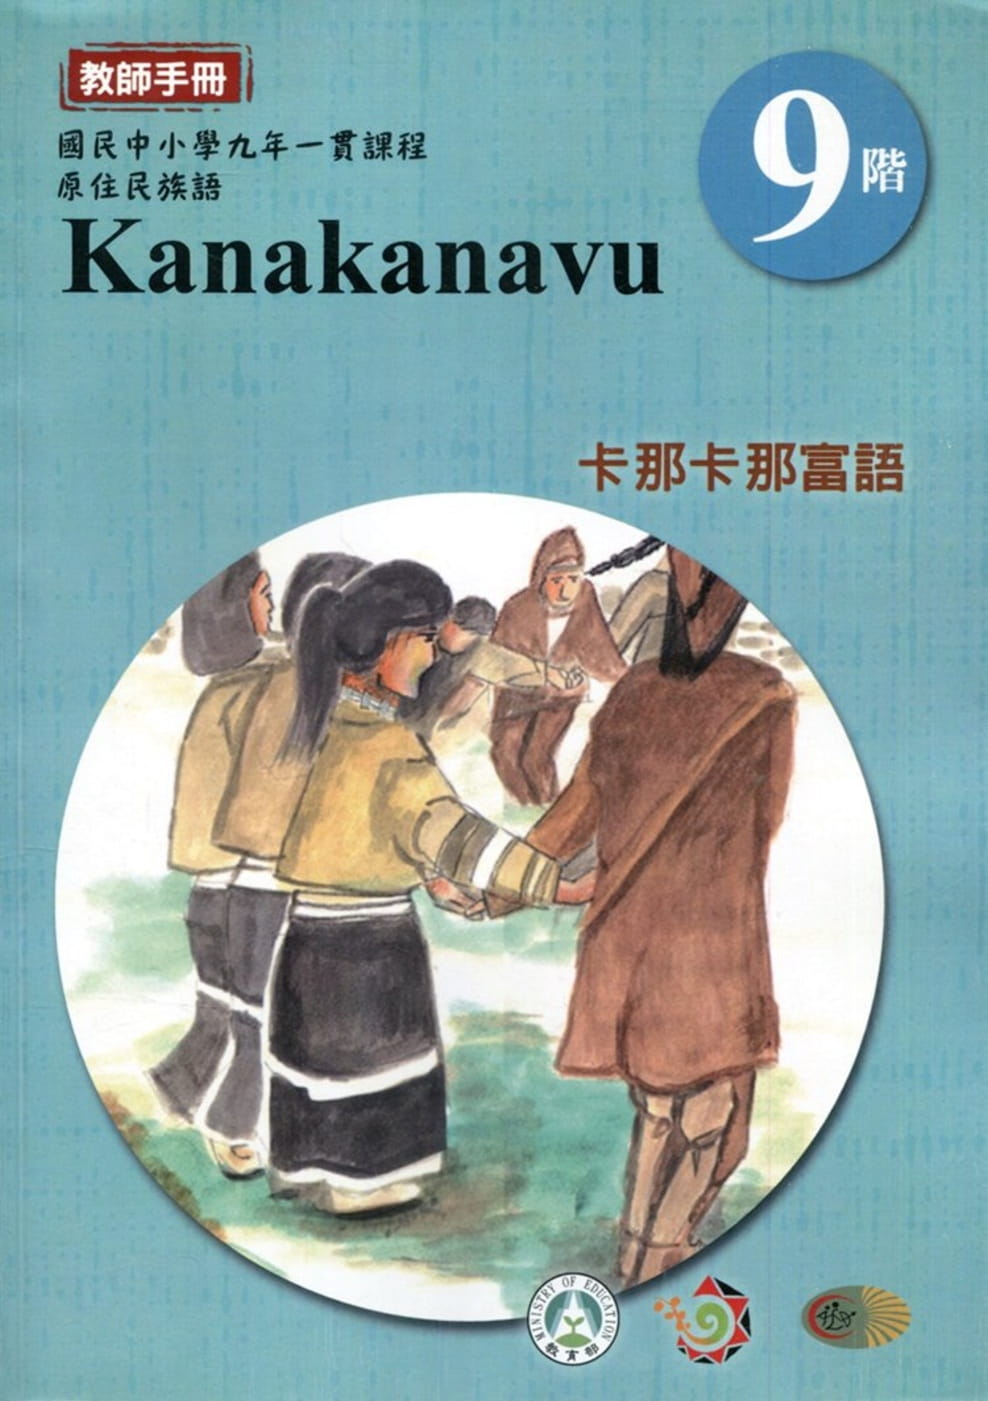 原住民族語卡那卡那富語第九階教師手冊2版